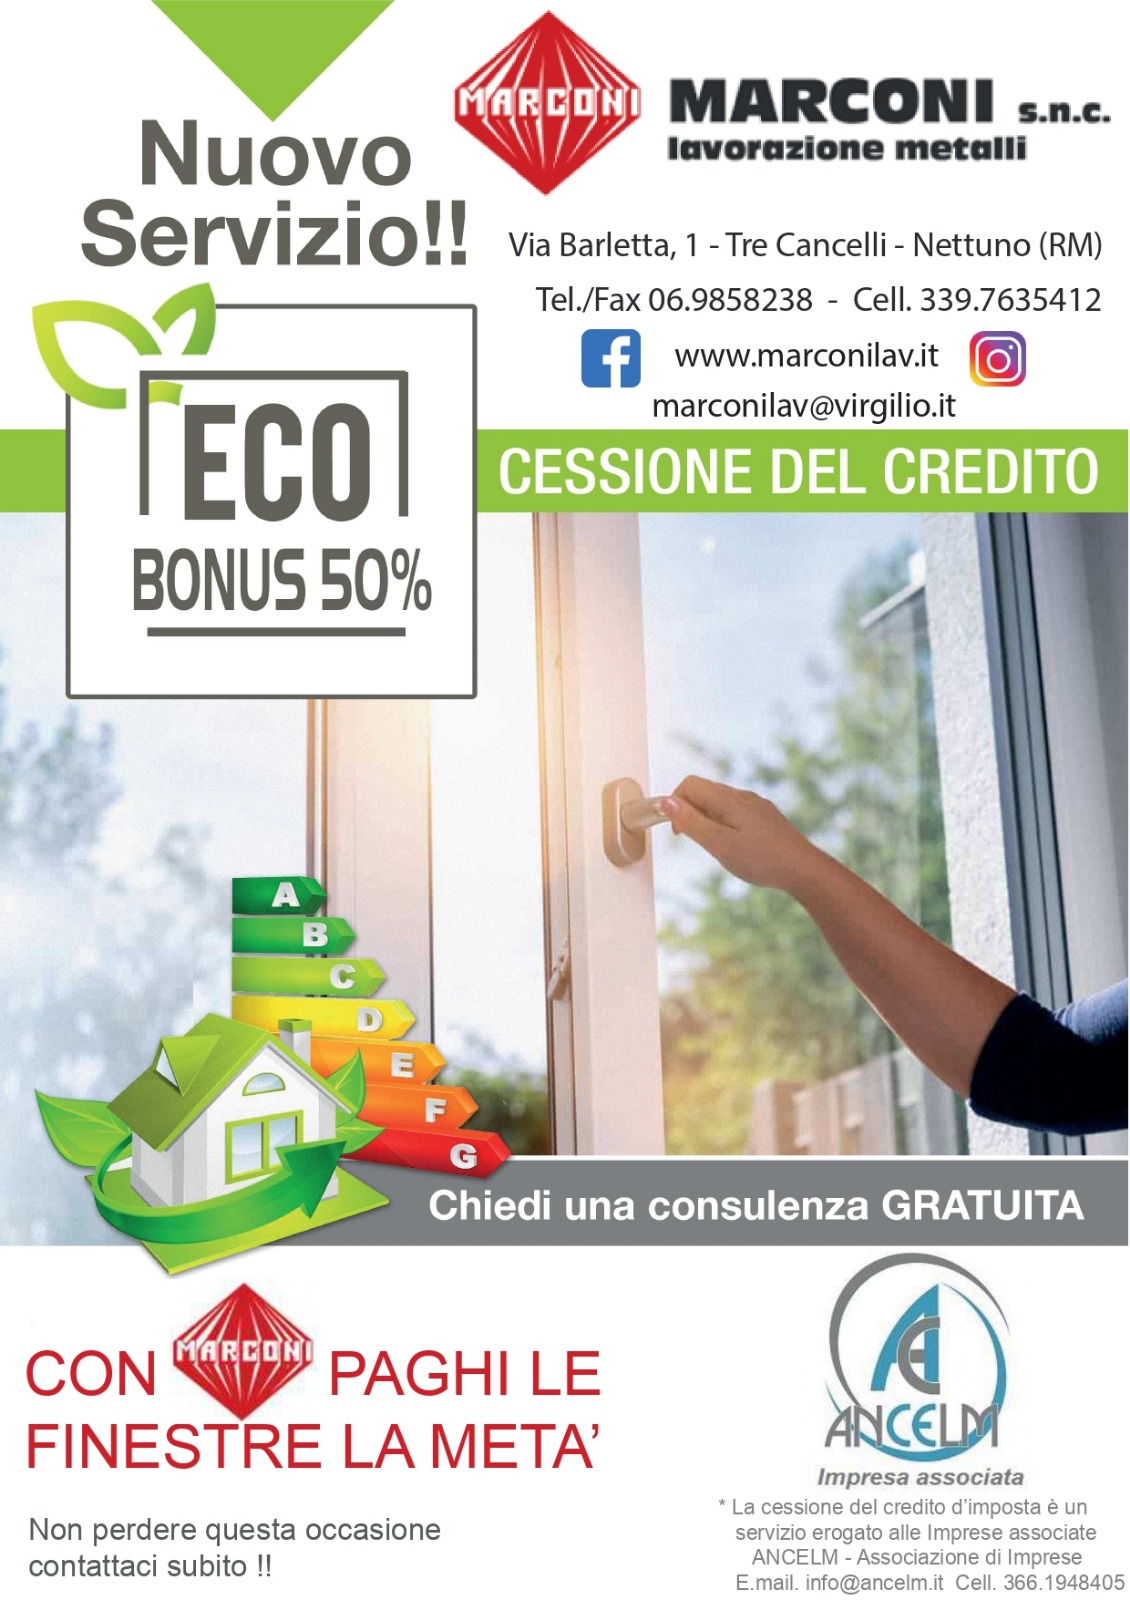 eco-bonus-50-cessione-del-credito